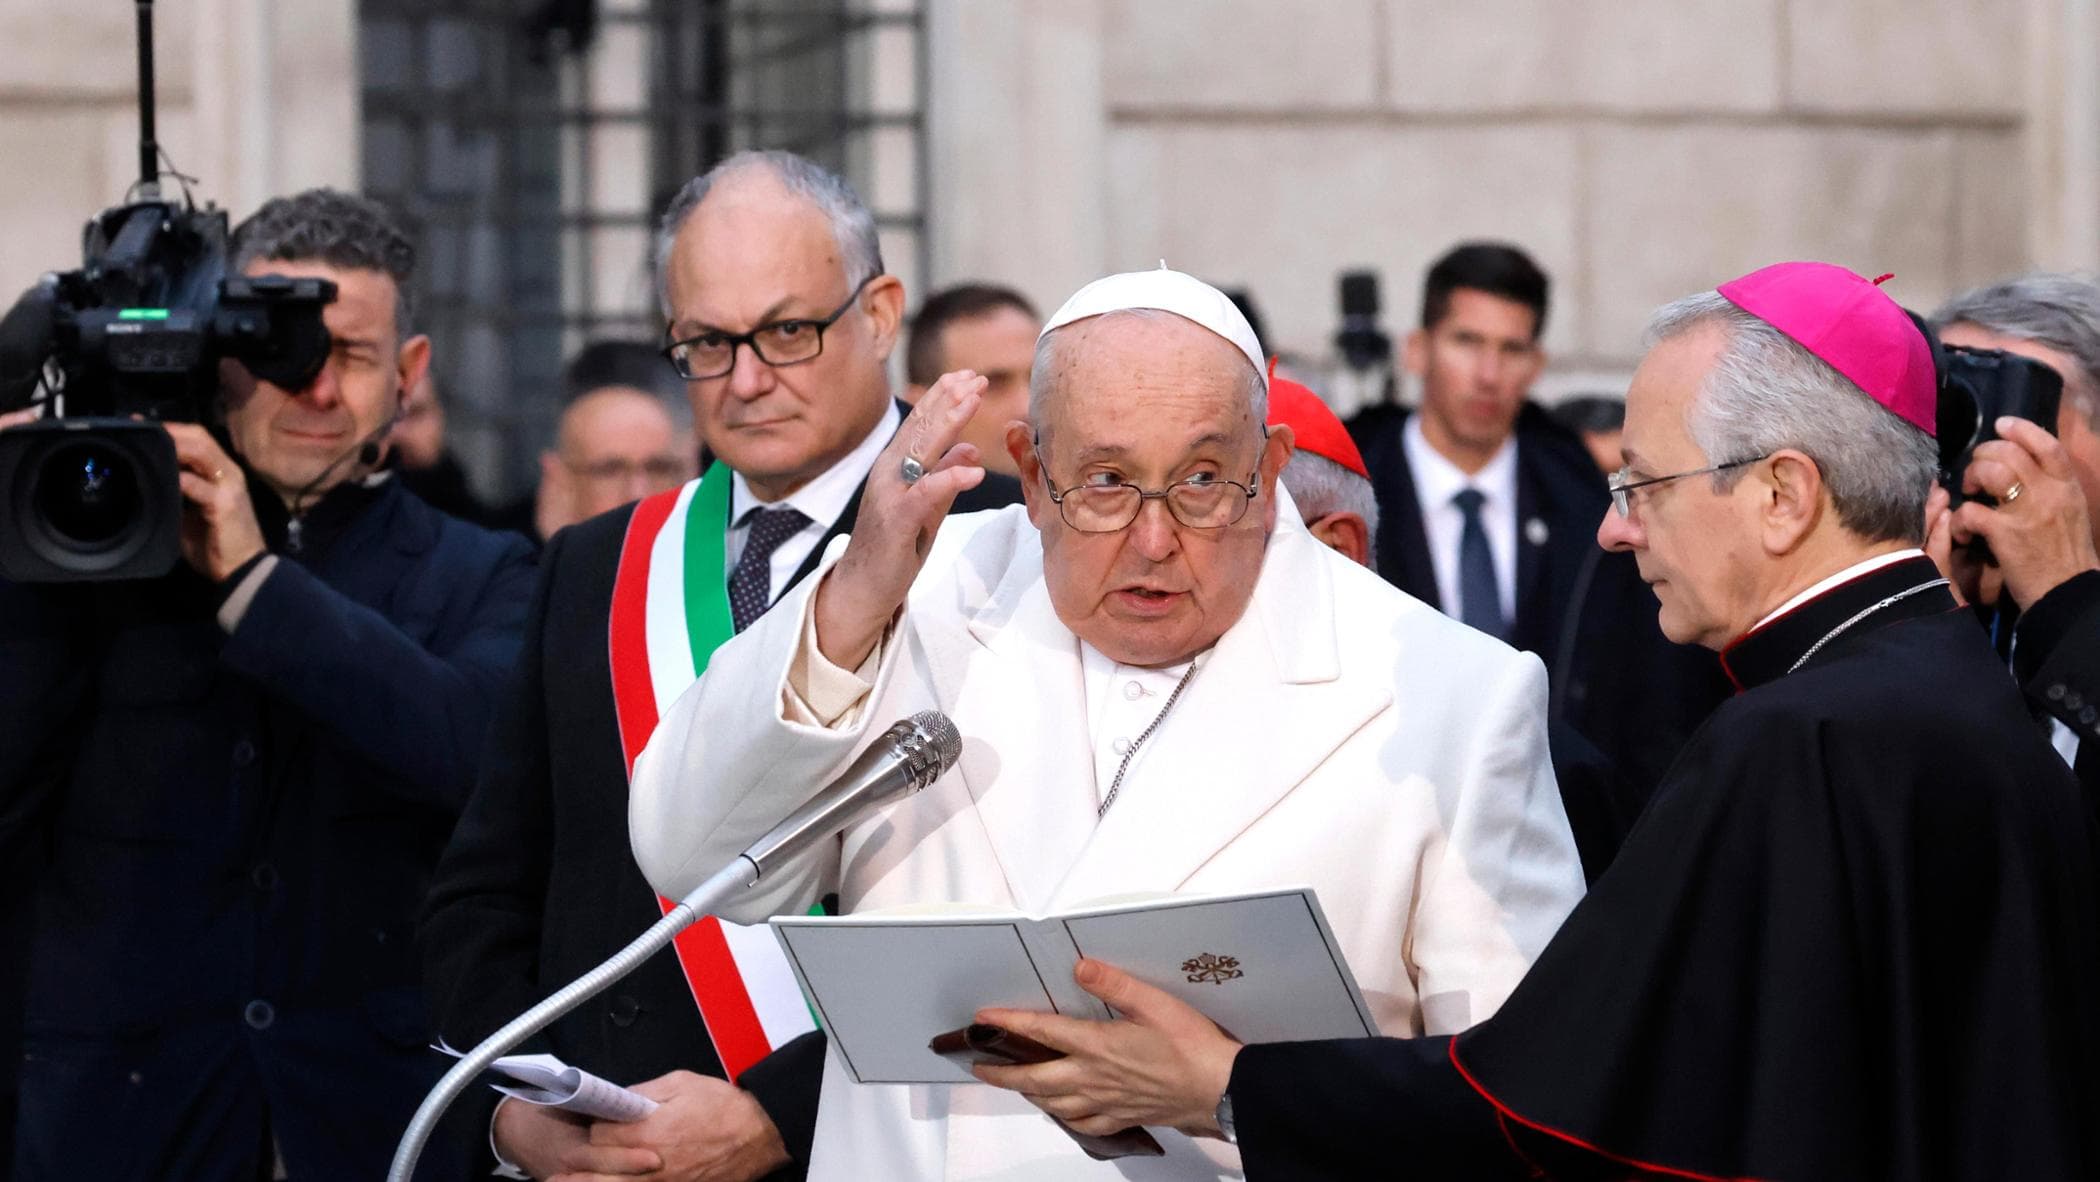 Coppie omosessuali, il Vaticano: "Sì alle benedizioni, ma non sono veri matrimoni"